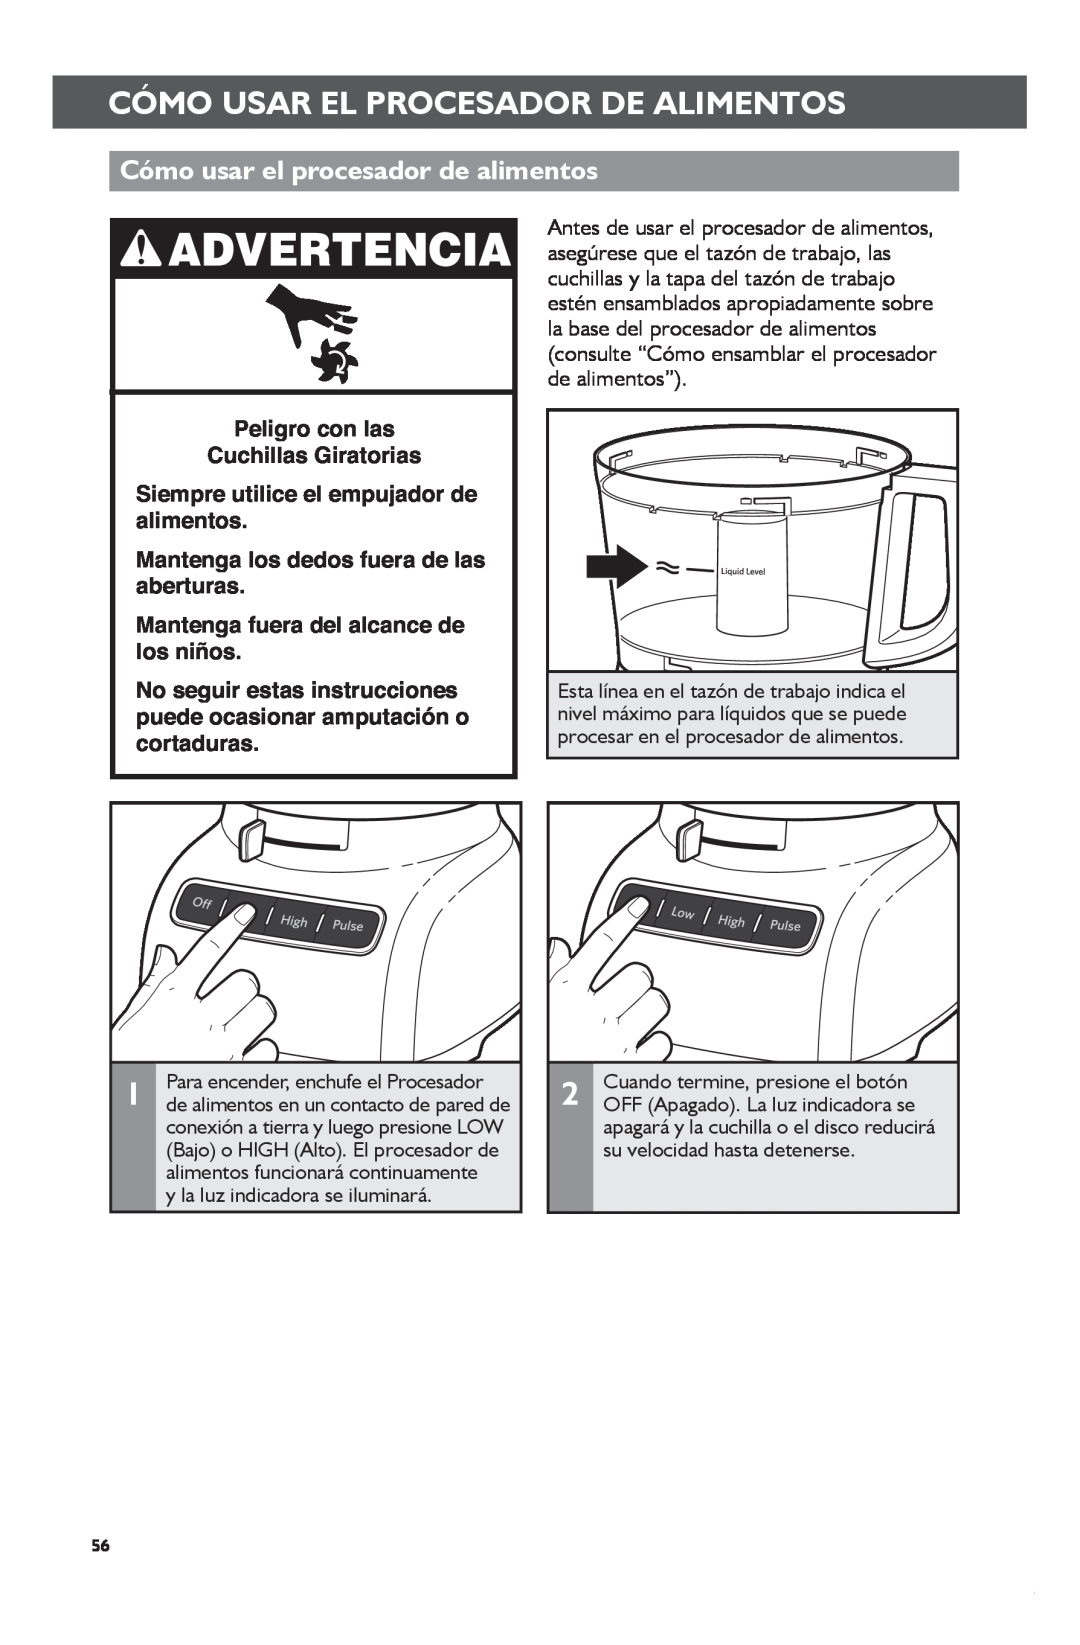 KitchenAid KFP1133 manual Cómo usar el procesador de alimentos, Cómomd +Usarshiftelclickprocesadorto Changedecopyalimentos 